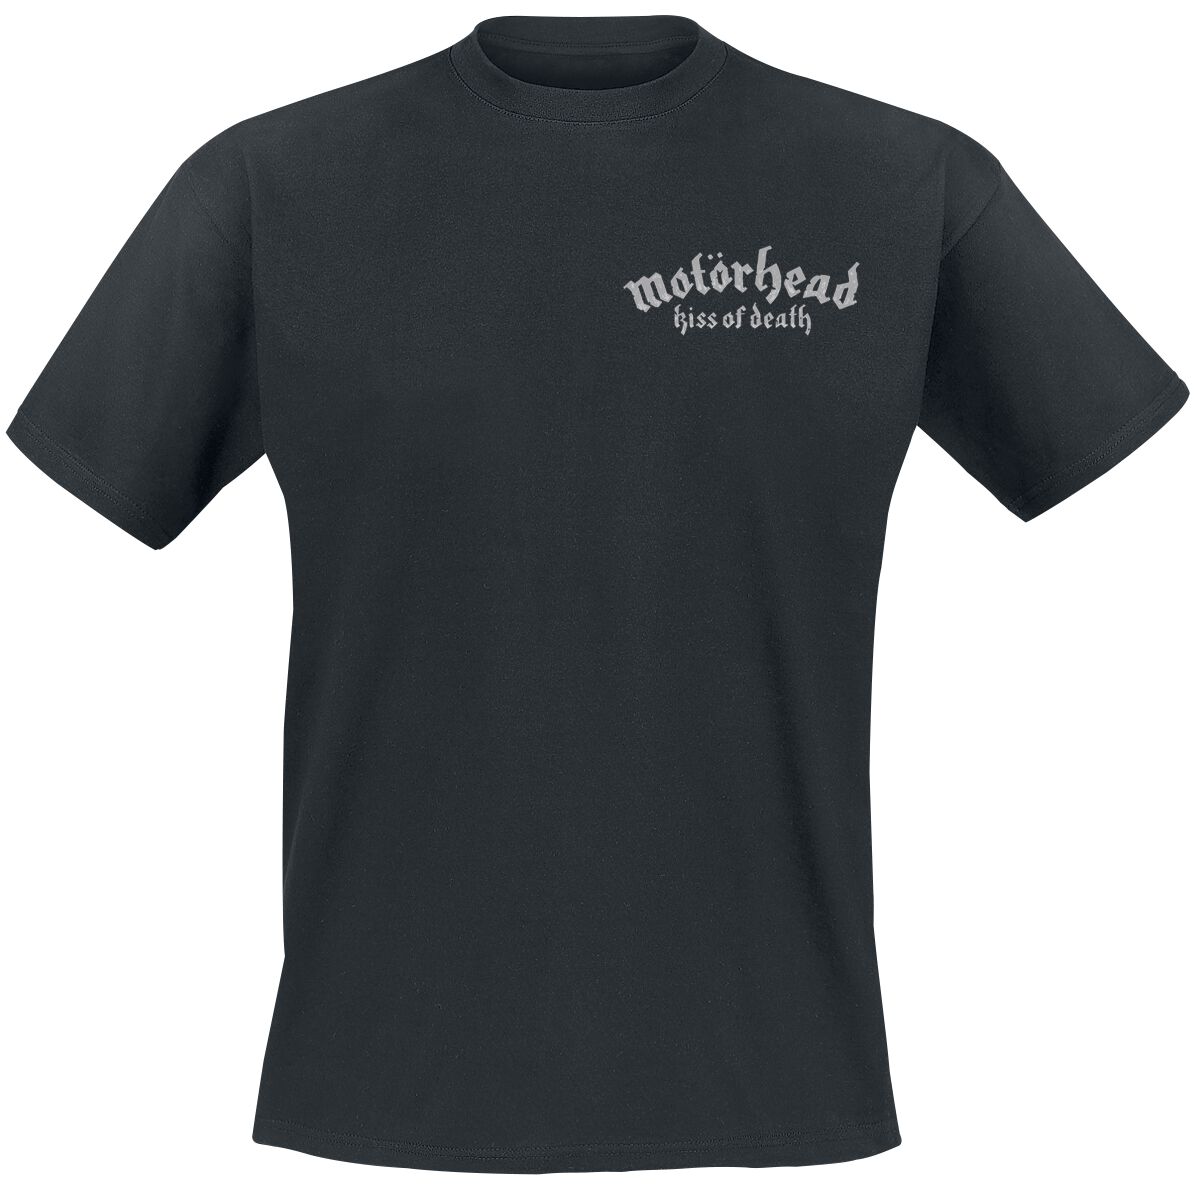 Motörhead T-Shirt - Kiss Of Death Bullet Circle V2 - S bis 4XL - für Männer - Größe L - schwarz  - Lizenziertes Merchandise!